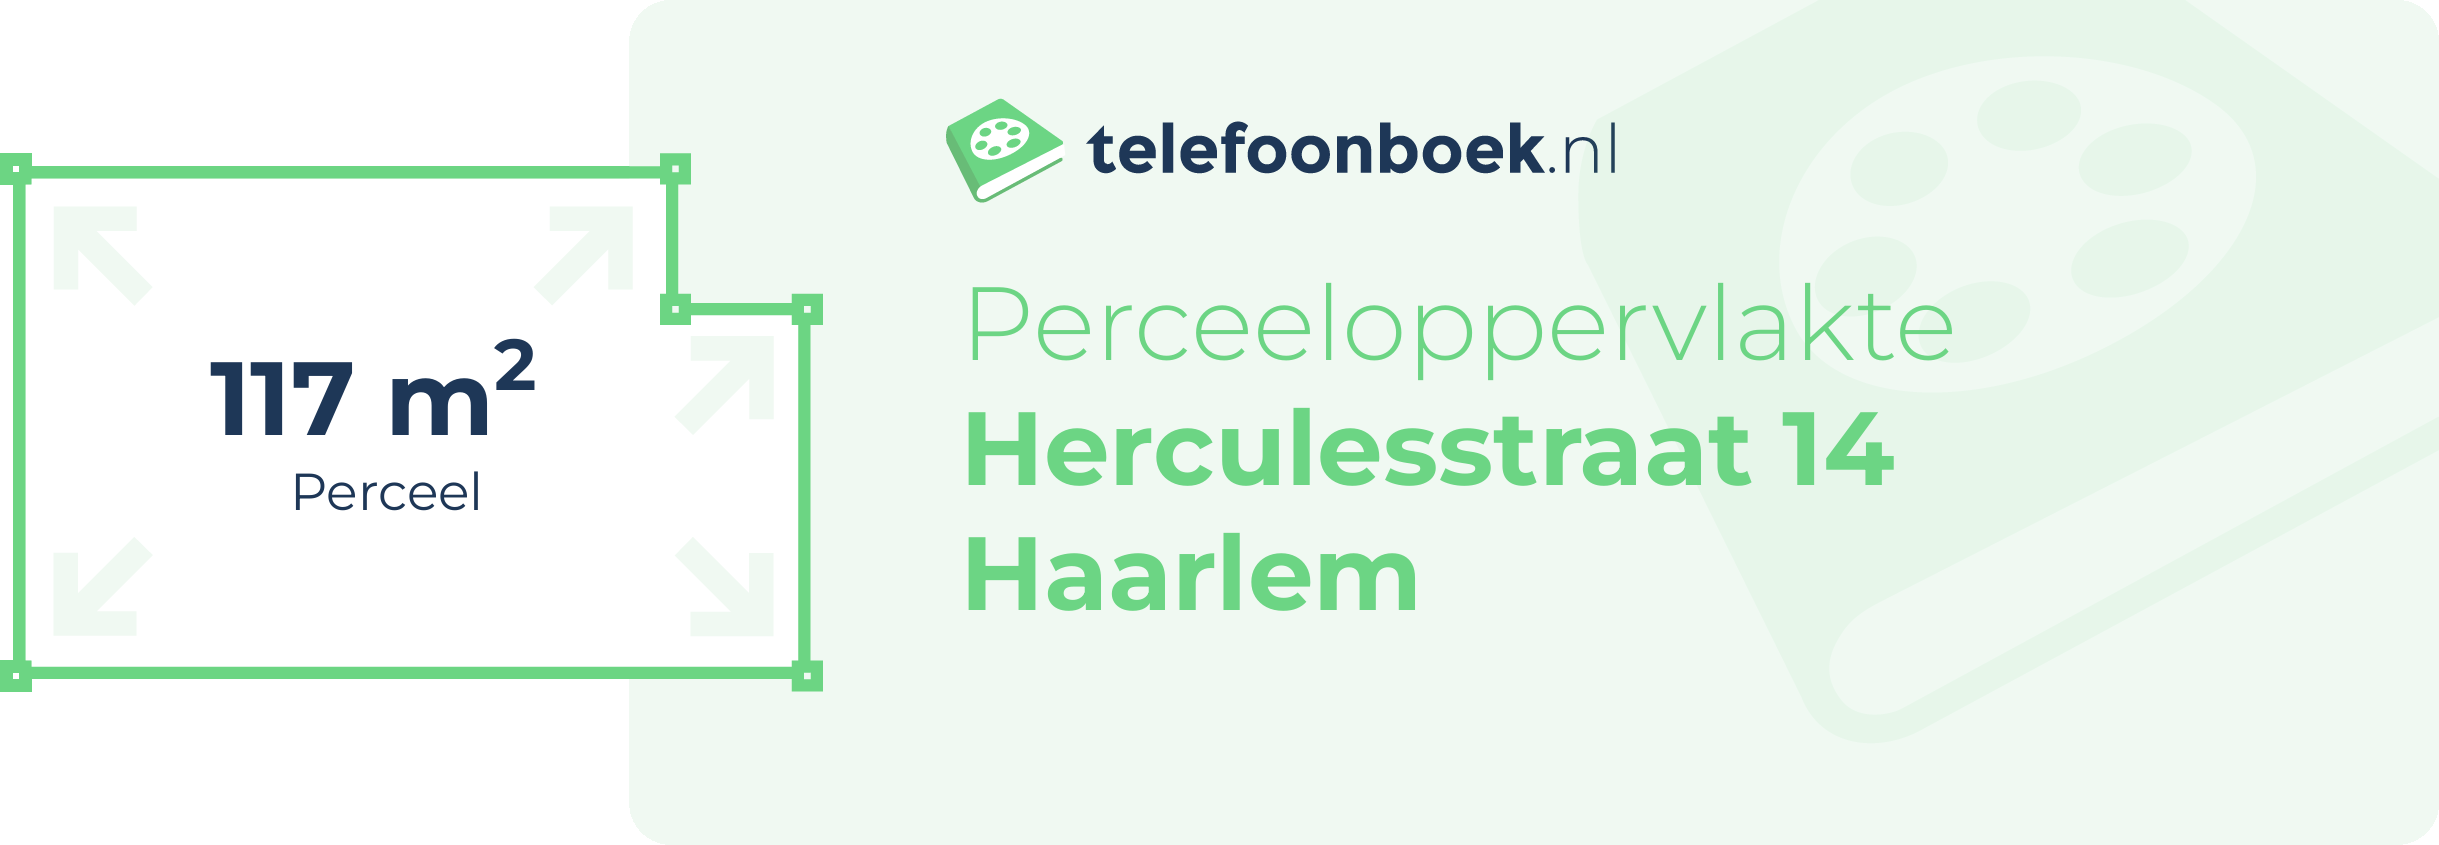 Perceeloppervlakte Herculesstraat 14 Haarlem